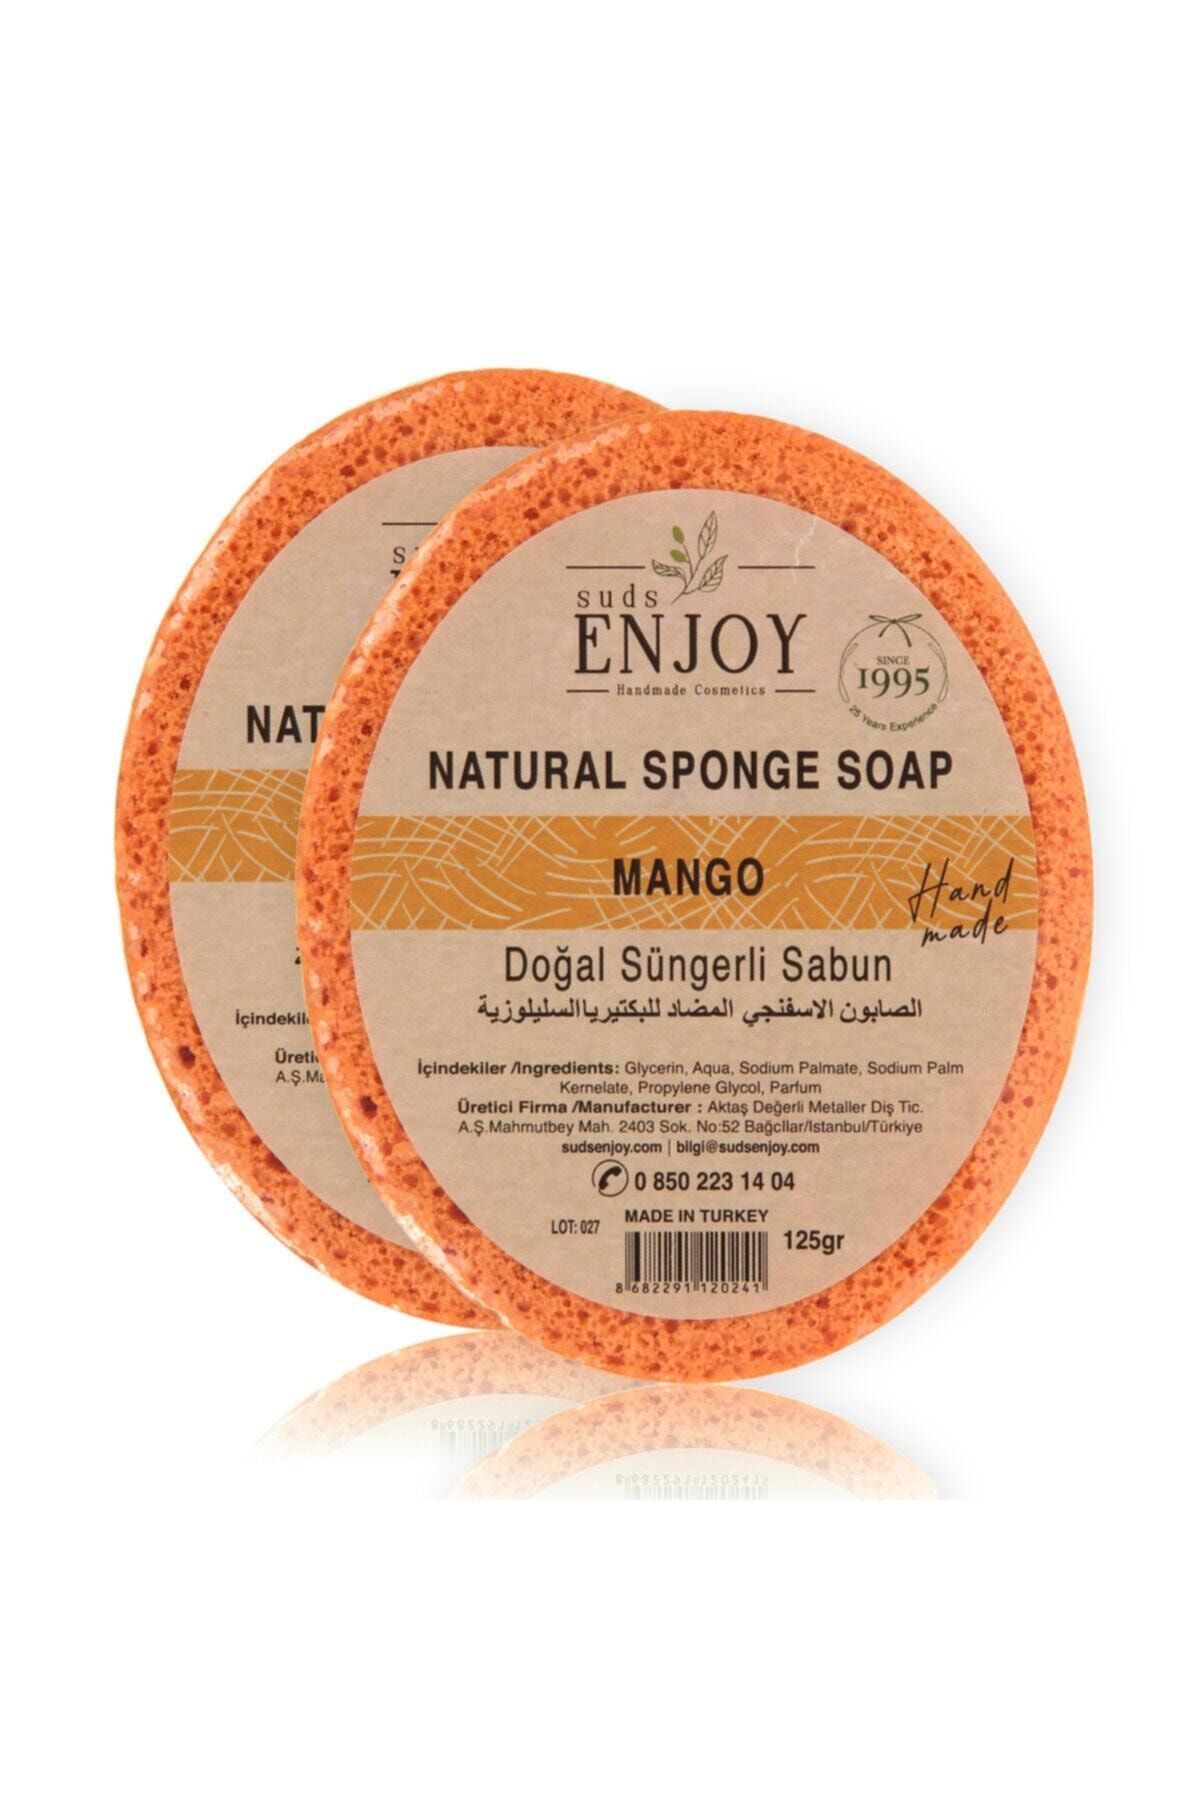 SUDSENJOY Doğal 2 Adet Mango El Yapımı Süngerli Vücut-duş Sabunu 2x125gr Suds Enjoy